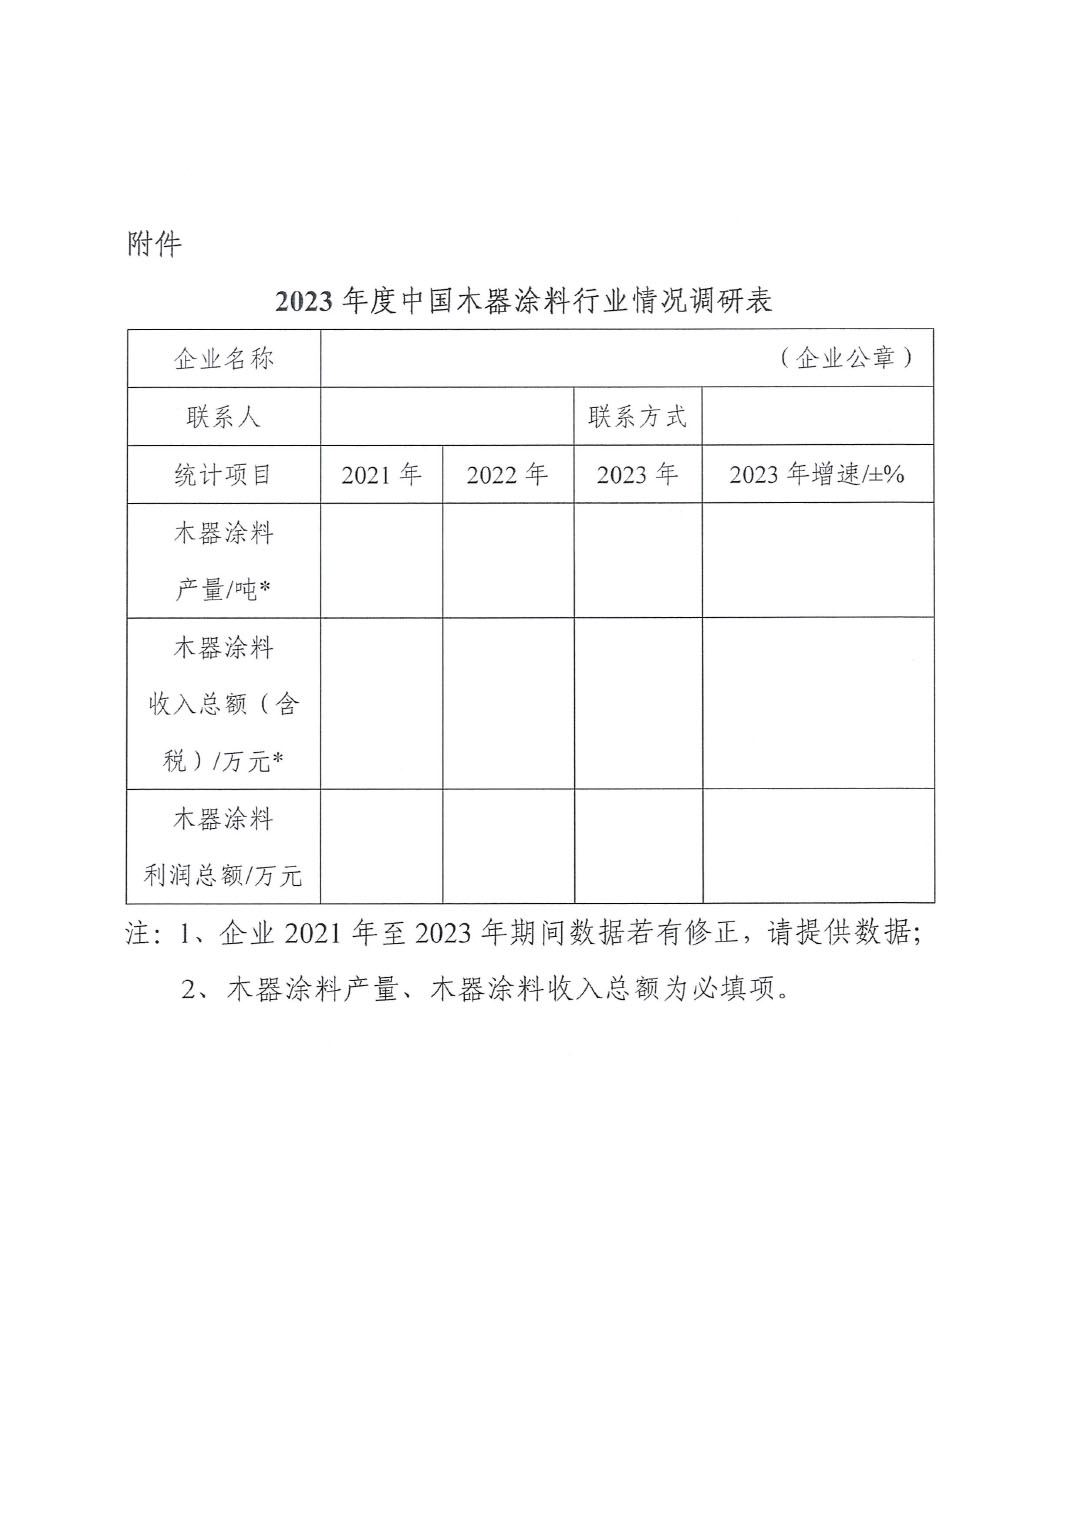 关于开展2023年度中国木器涂料行业情况的通知-3